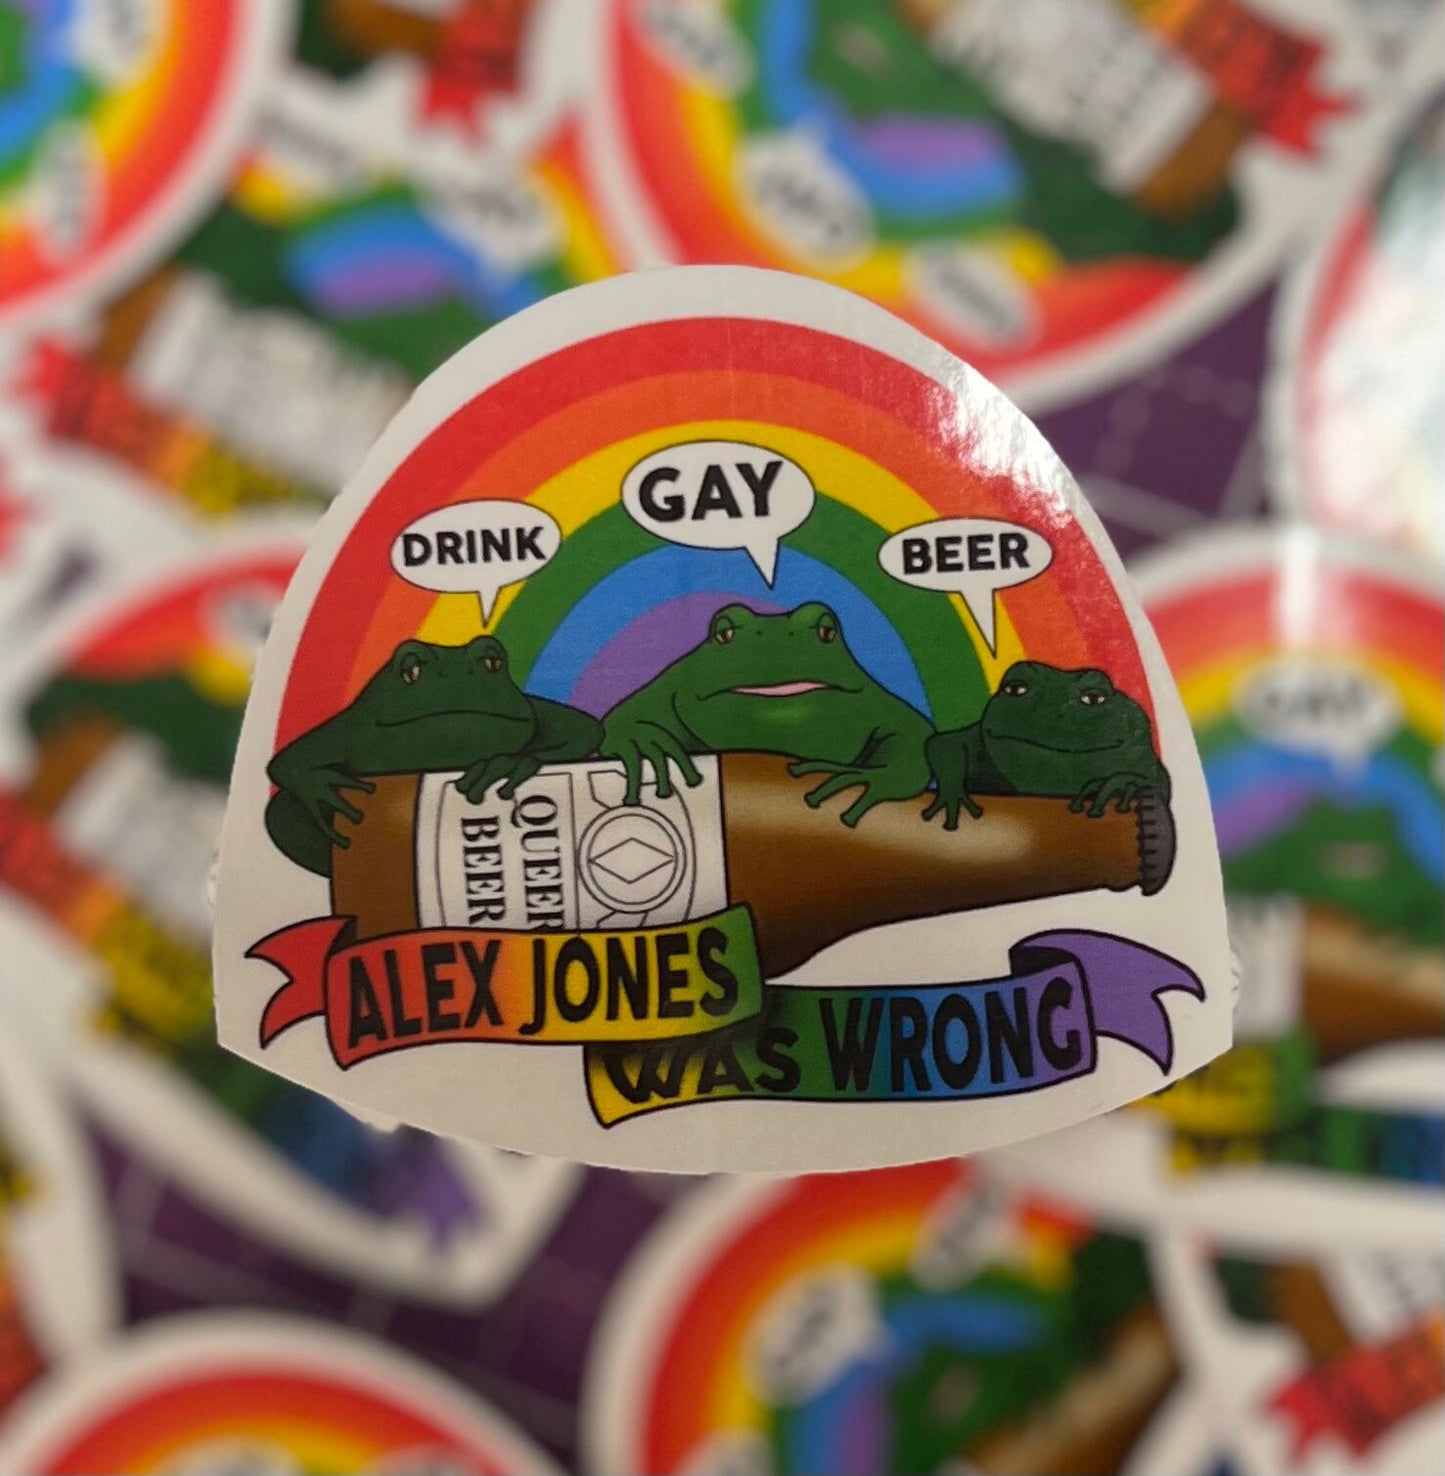 Gay Budweiser Frogs - Alex Jones was Wrong Sticker